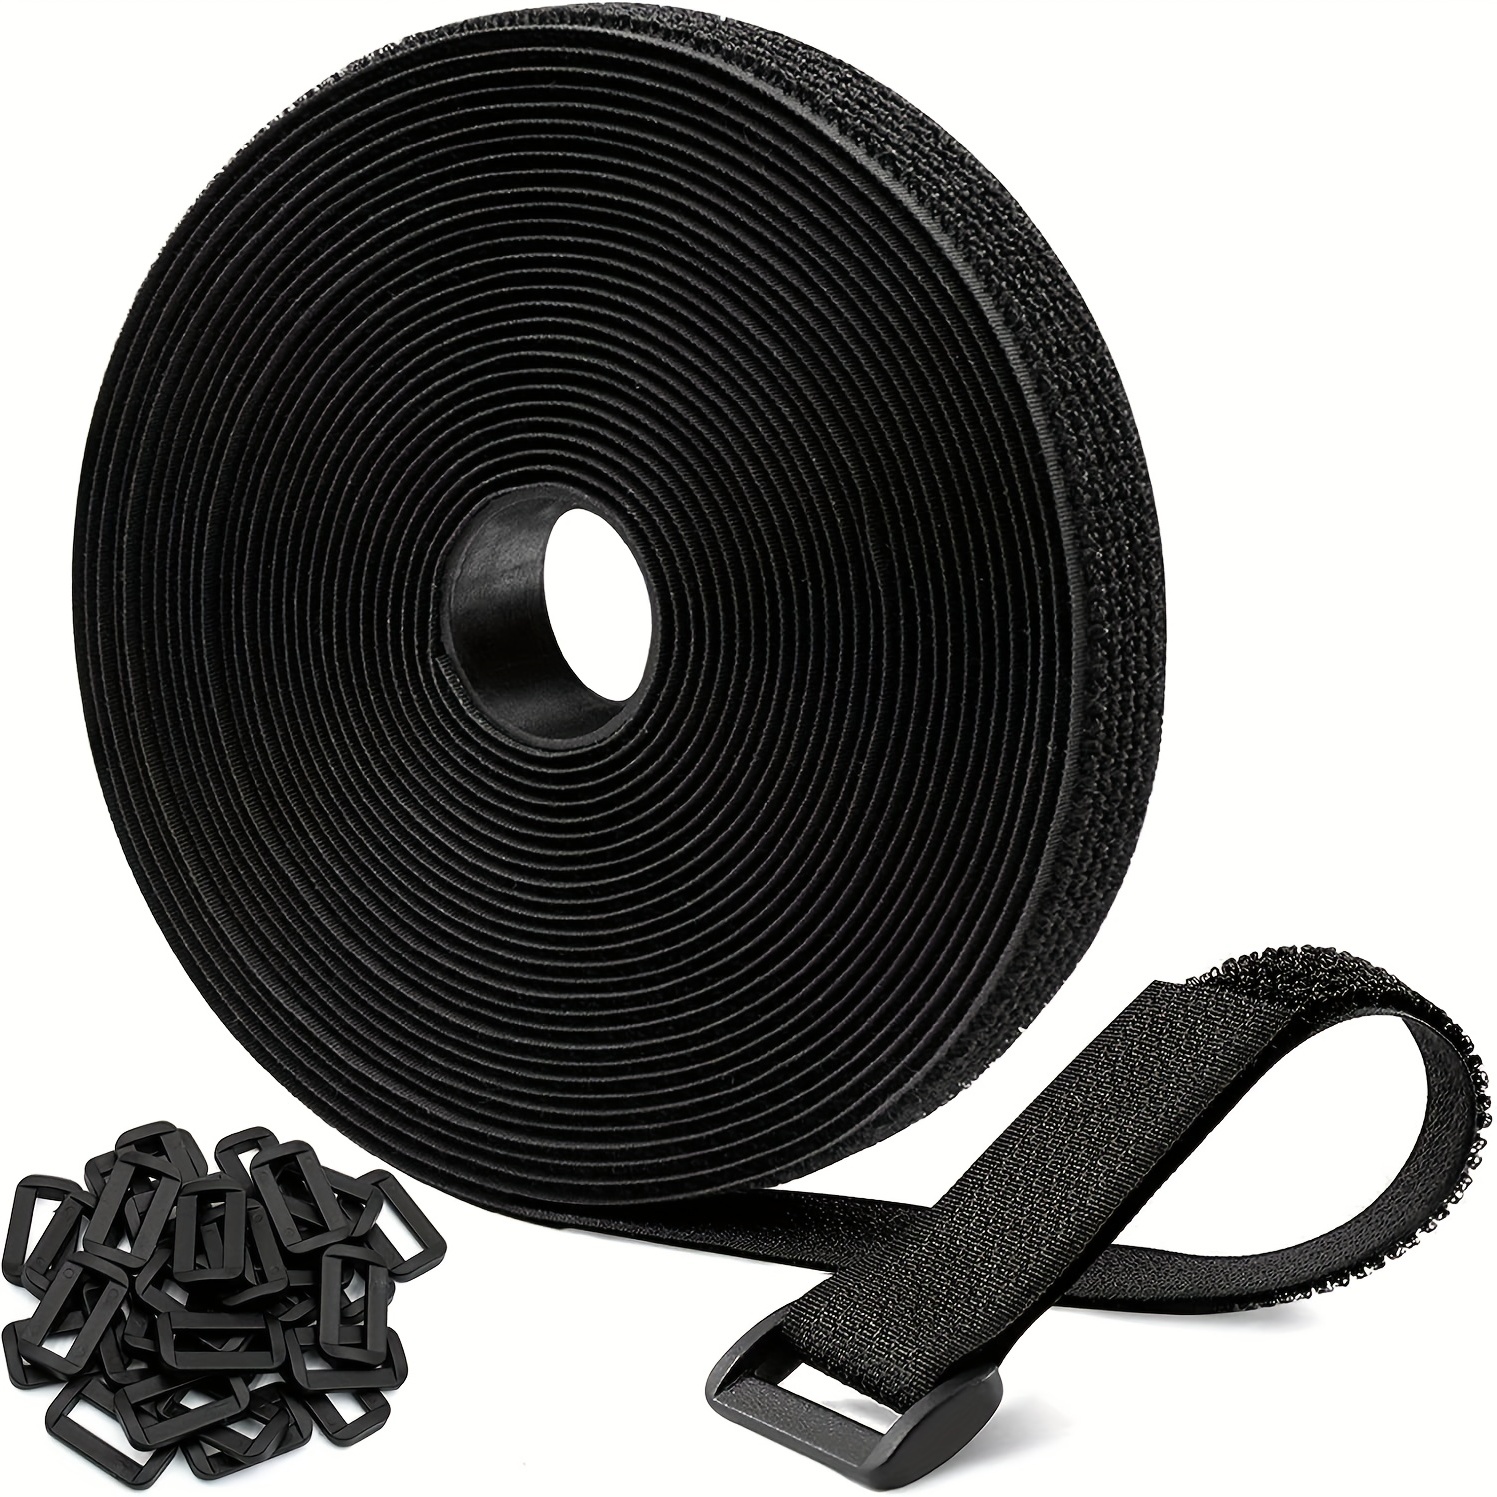 4 Yards Length Wide Black Sew On Hook Loop Tape Non adhesive - Temu